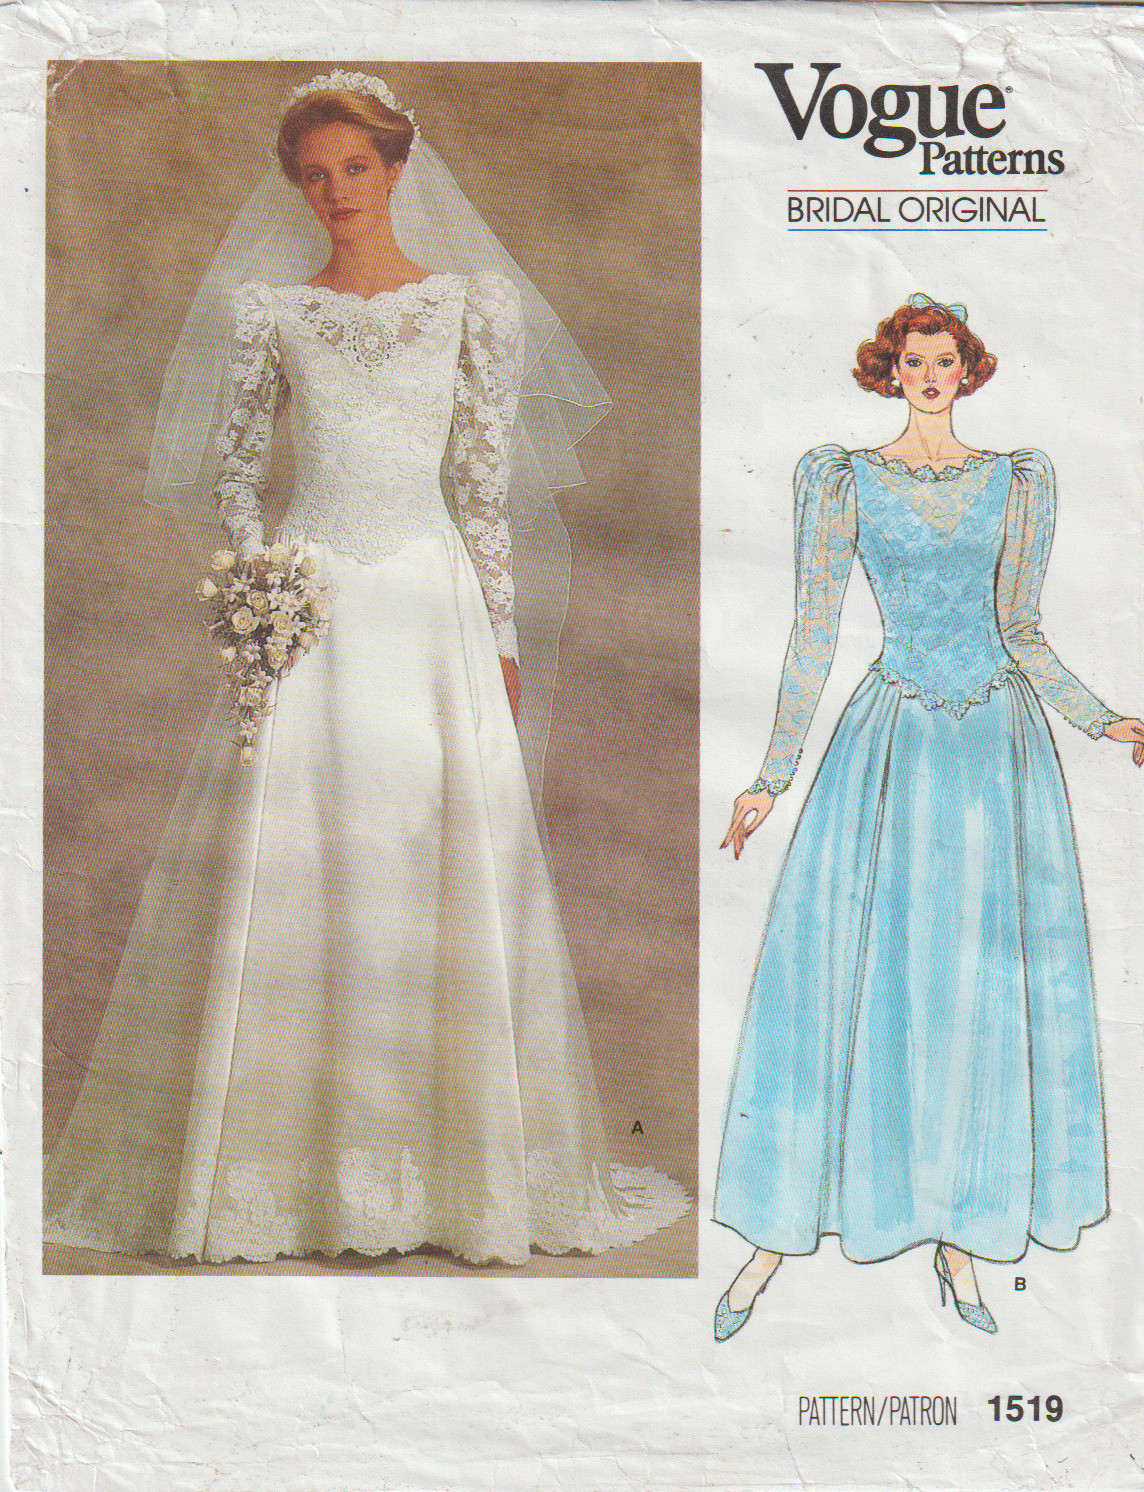 Vogue Bridal Original 1519 ©1985 Misses and Petite Bridal Gown, Size 12, FF